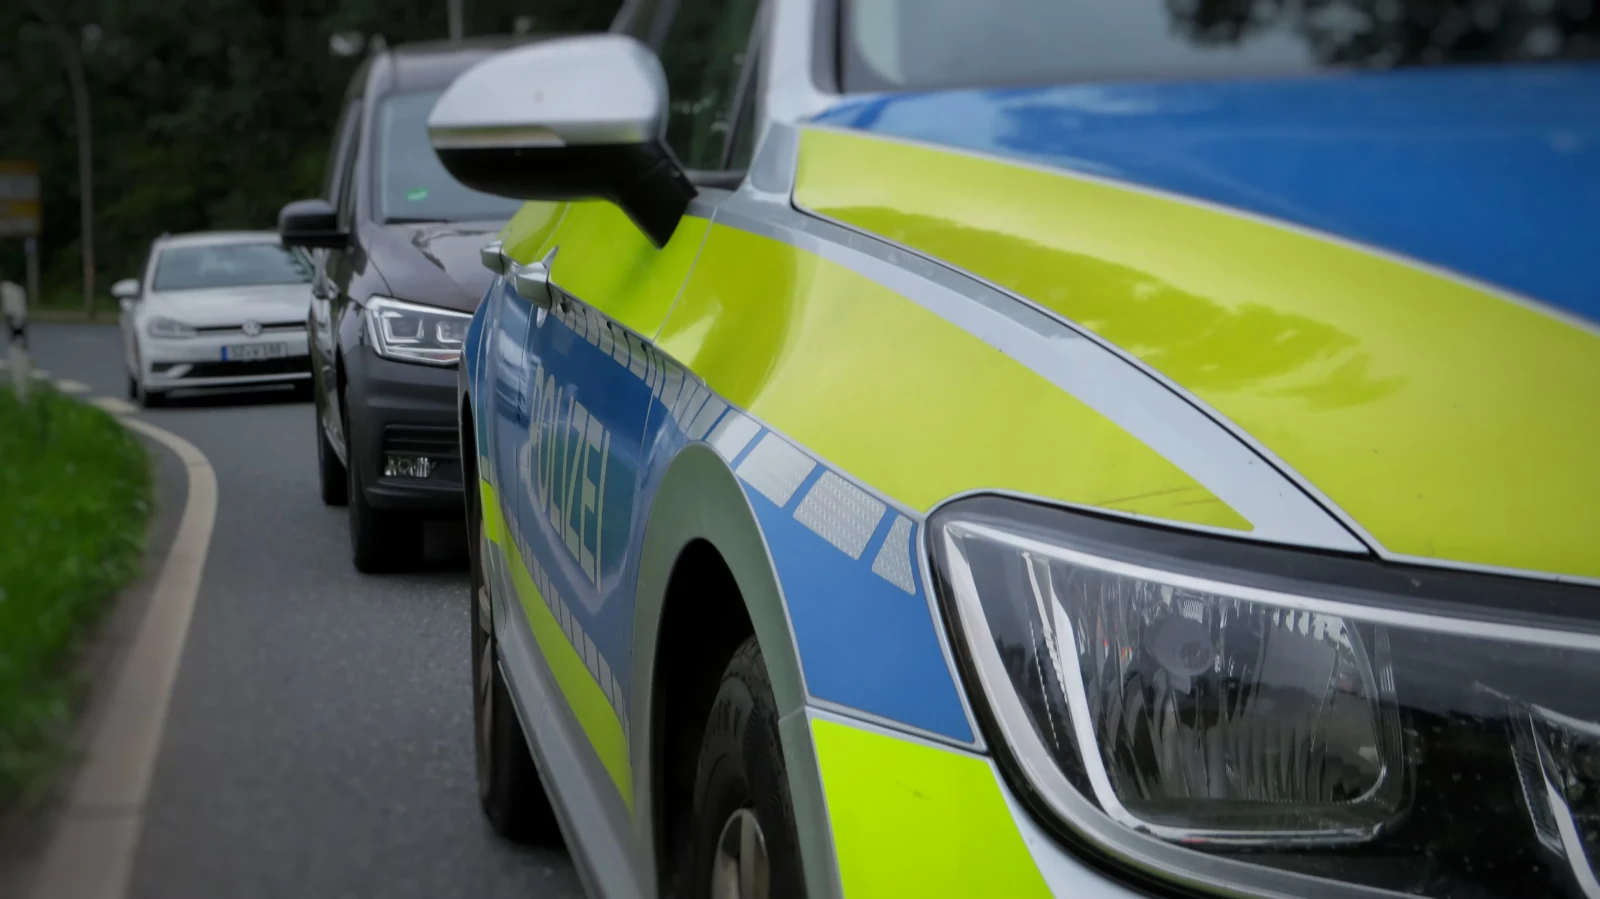 Junge bei Verkehrsunfall in Rostock leicht verletzt